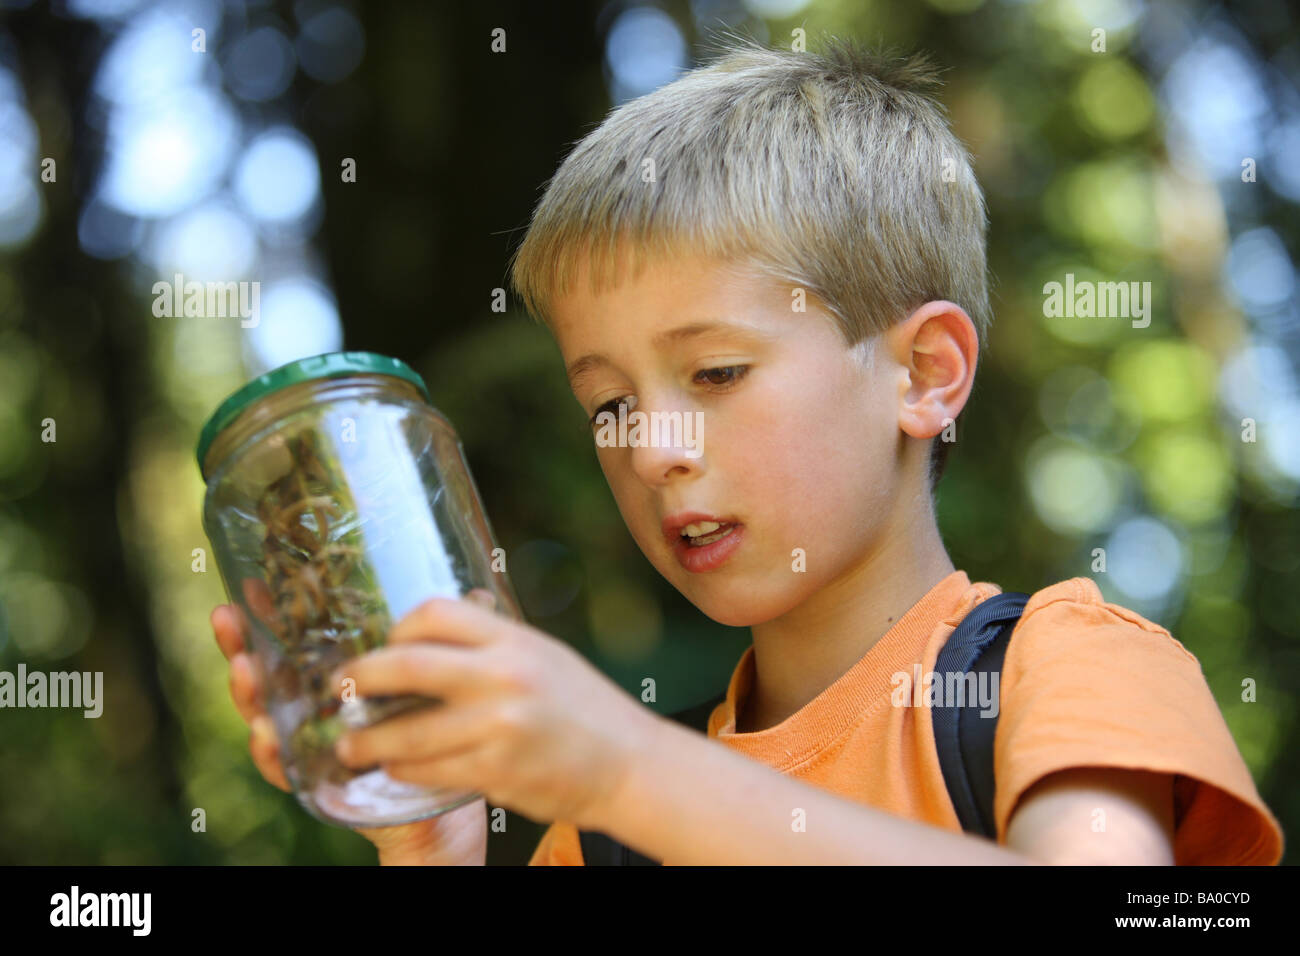 Niño sostiene un frasco con insecto Foto de stock